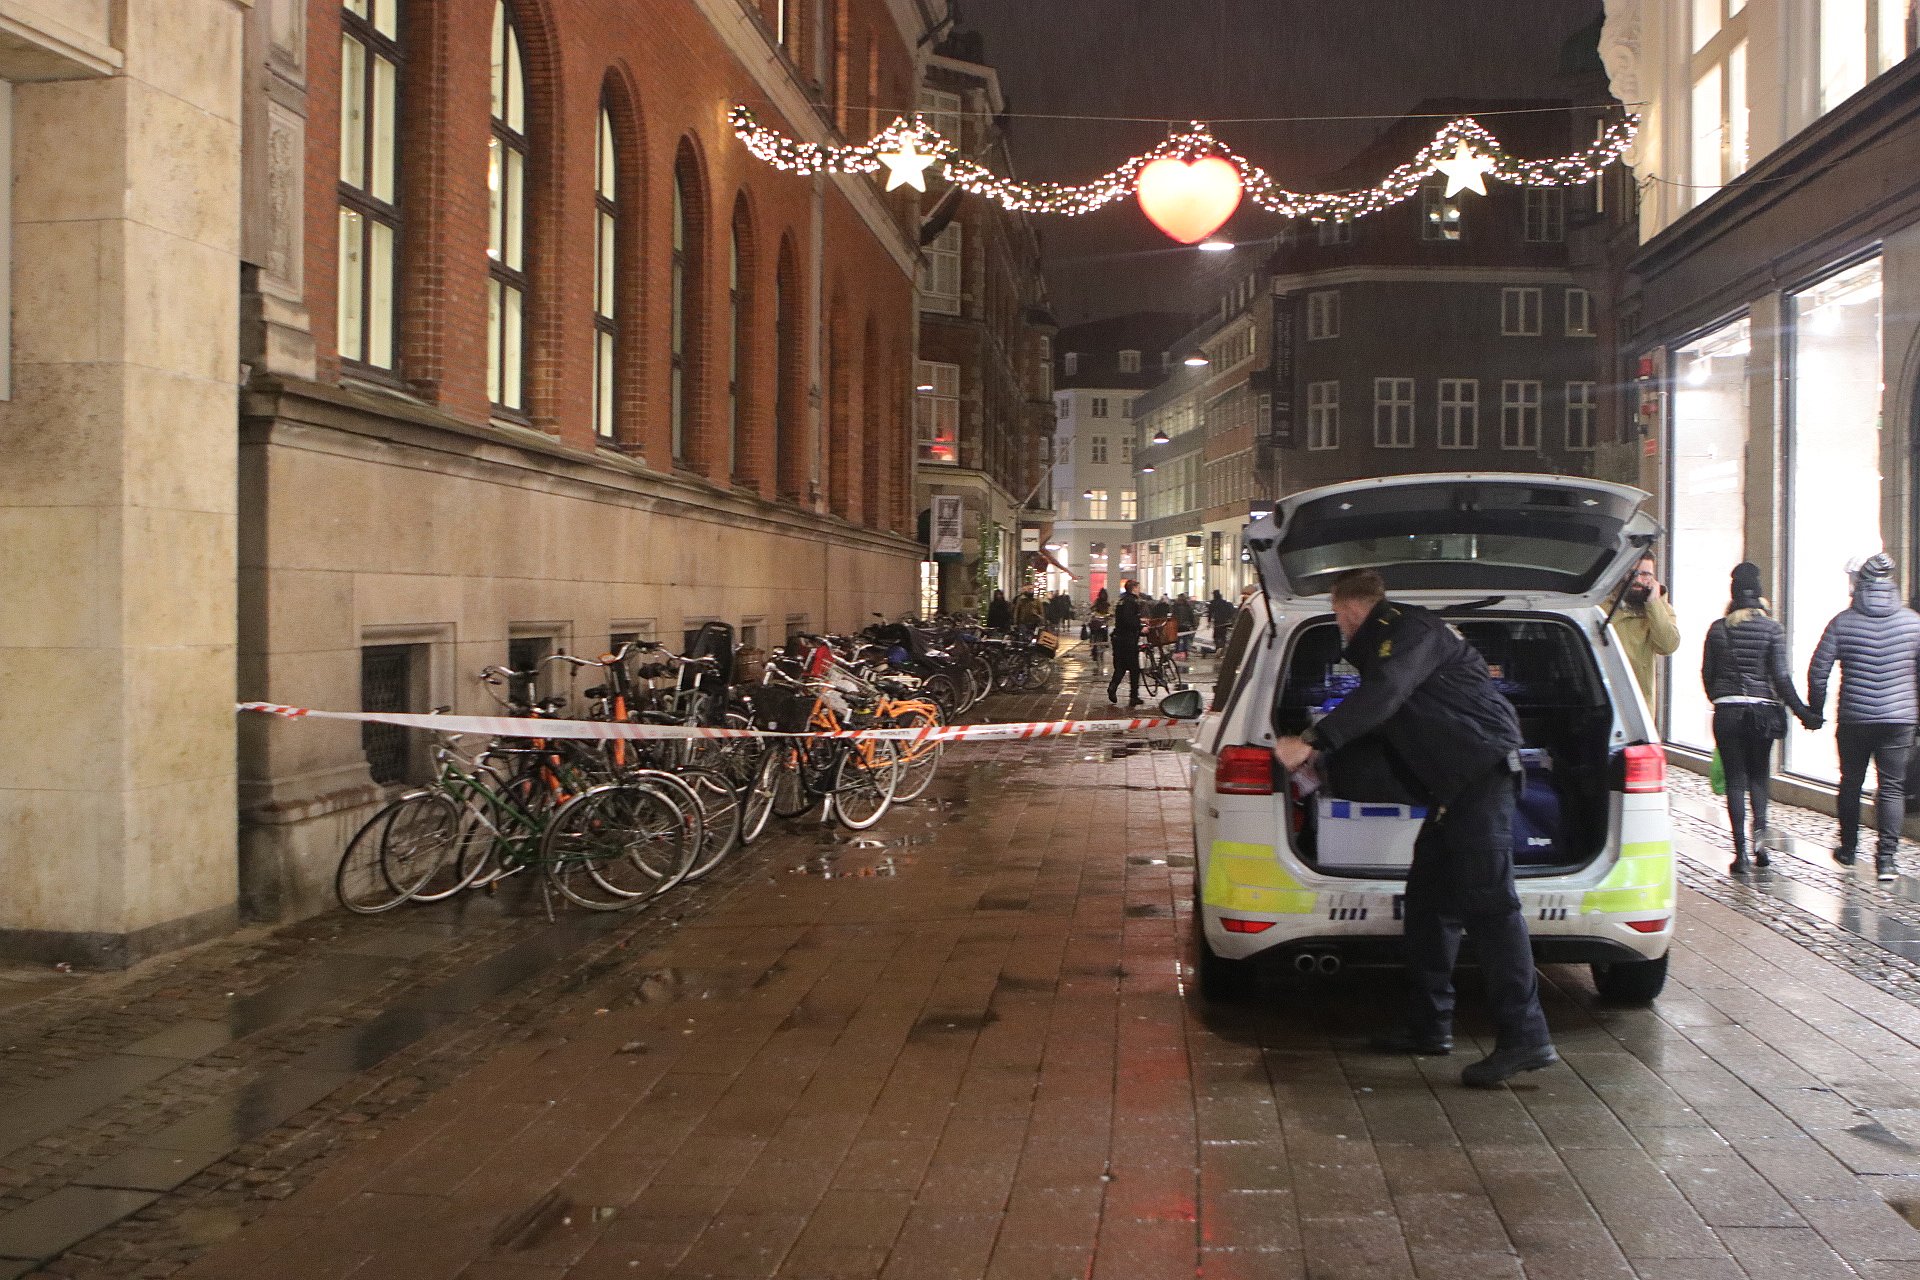 Efter stor aktion i København: Politiet leder efter gerningsmænd TV 2 Kosmopol